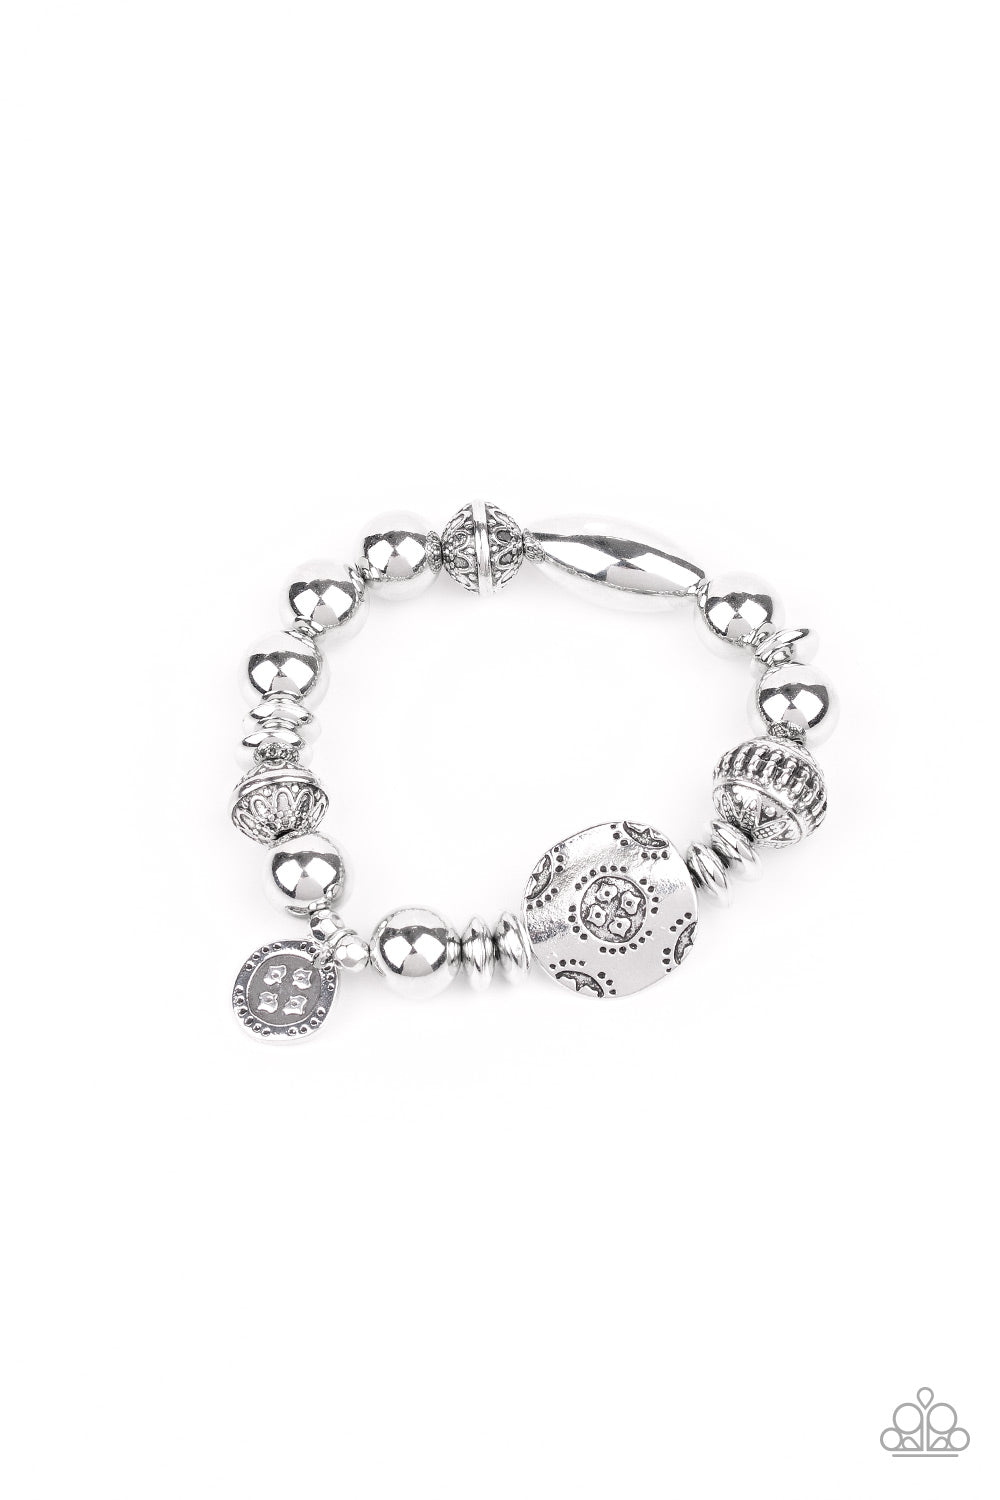 Aesthetic Appeal - Silver bracelet